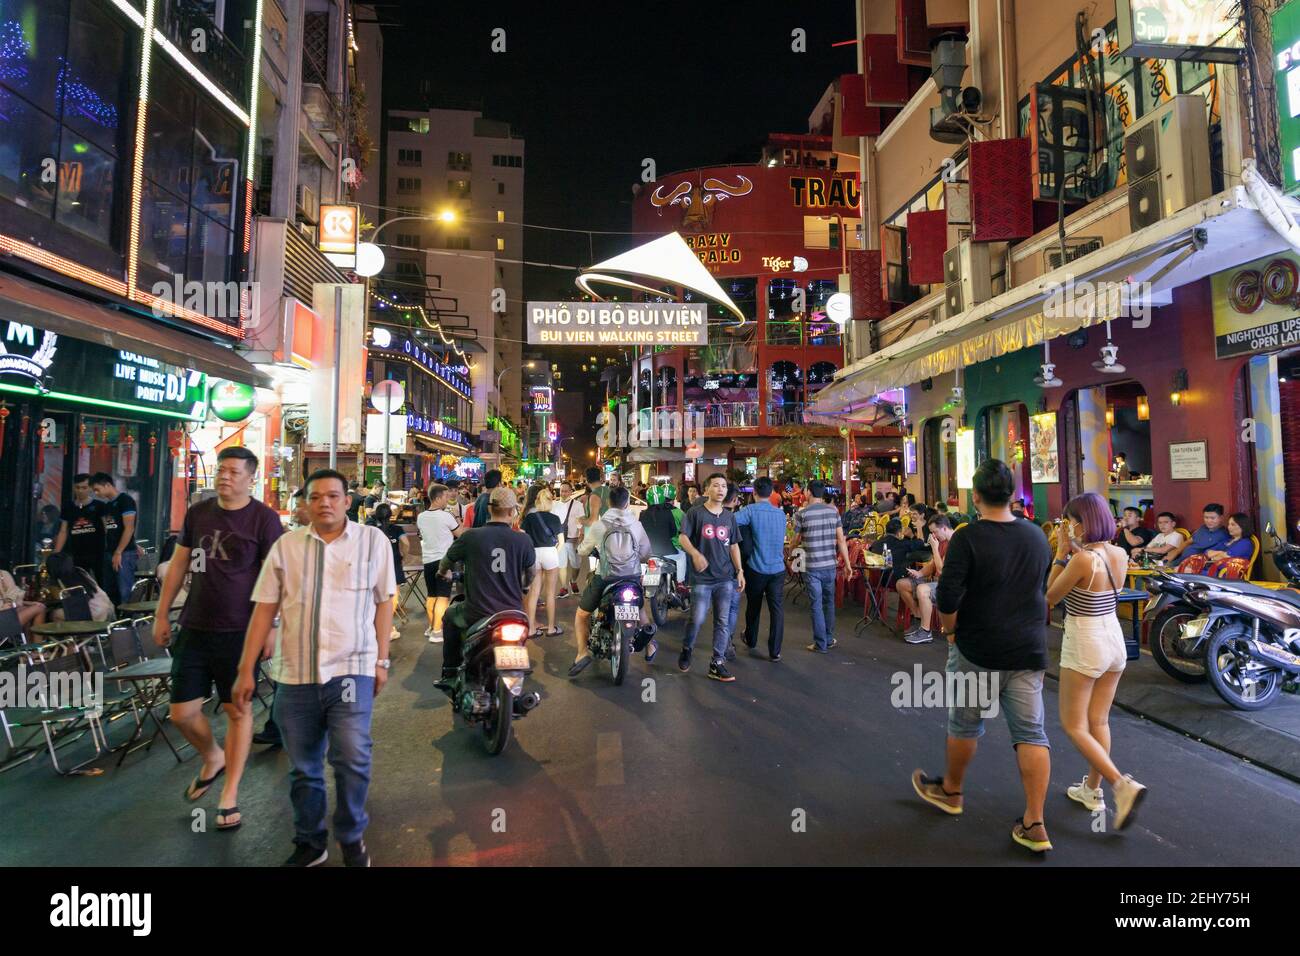 Les gens qui se promène dans la rue bondée de Bui Vien, célèbre pour sa vie nocturne animée Banque D'Images